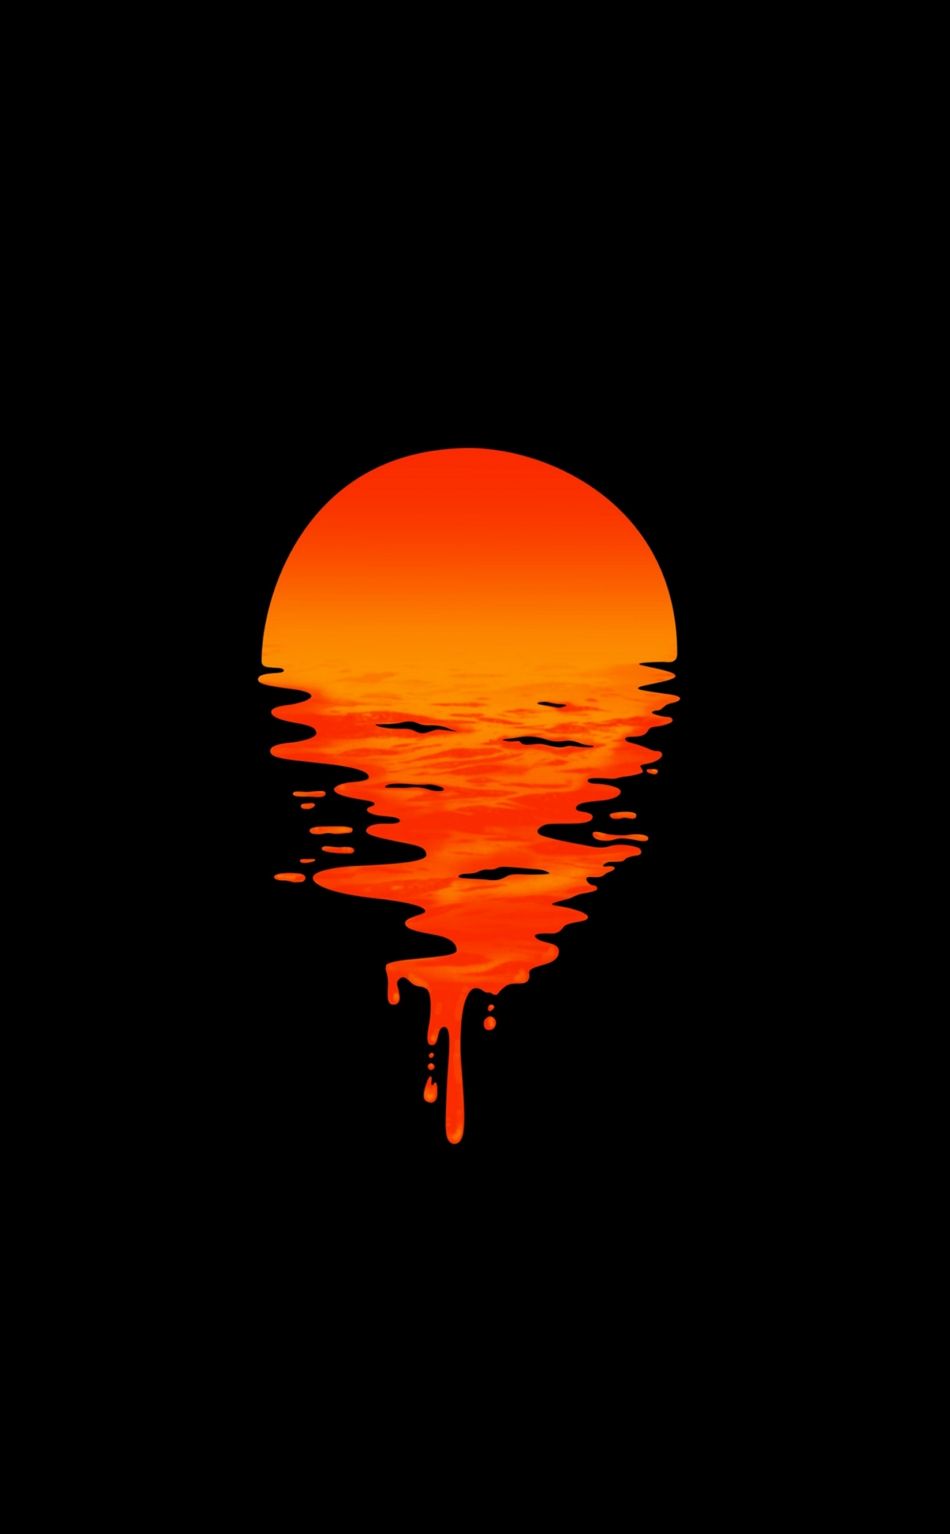 Lake, sunset, orange, minimal, dark wallpaper. Dark phone wallpaper, Dark wallpaper iphone, HD dark wallpaper